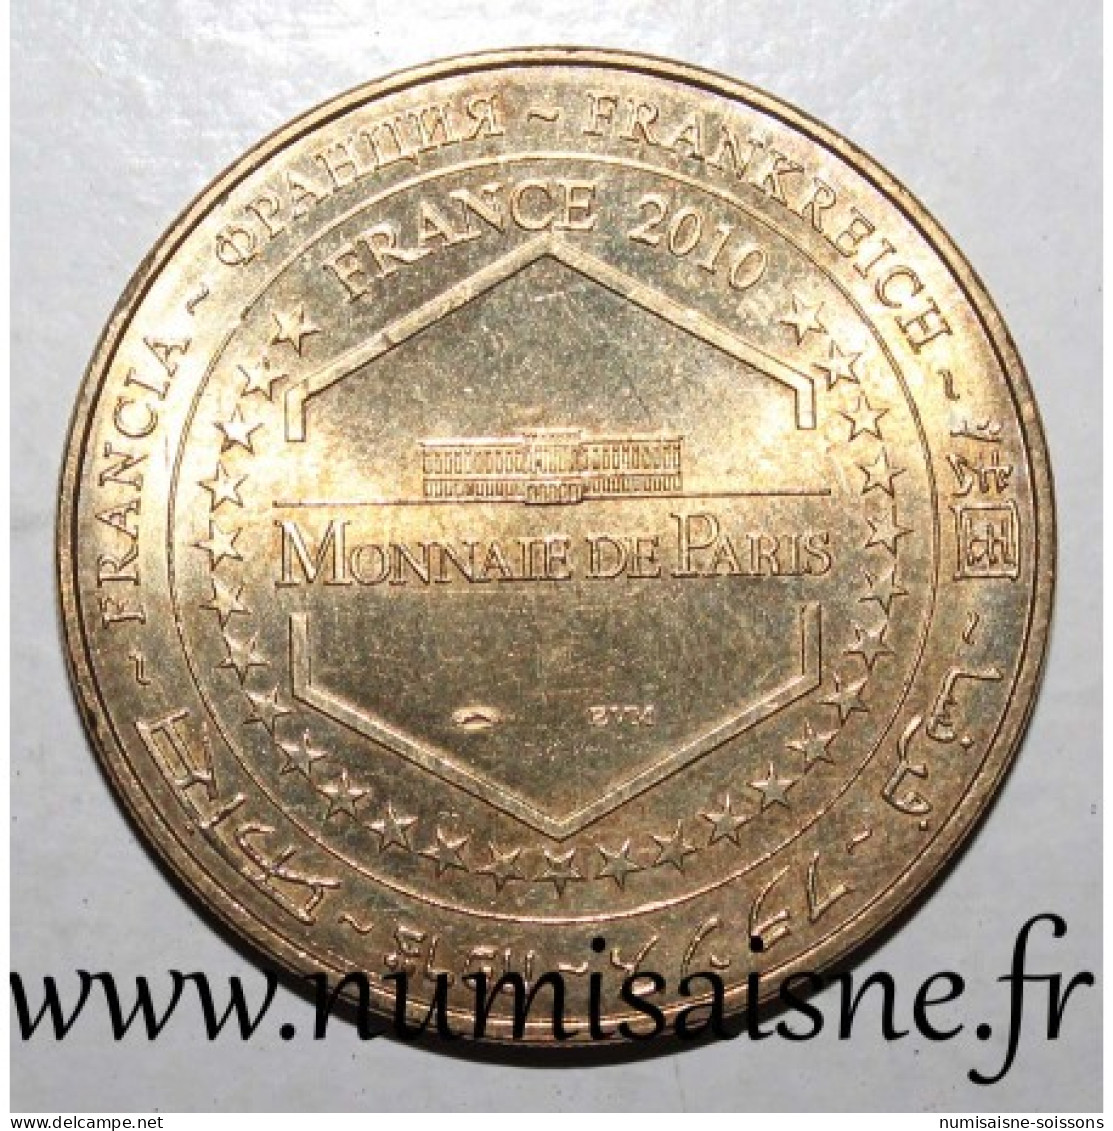 17 - SAINT CLEMENT DES BALEINES - PHARE DES BALEINES - ILE DE RÉ - Monnaie De Paris - 2010 - 2010